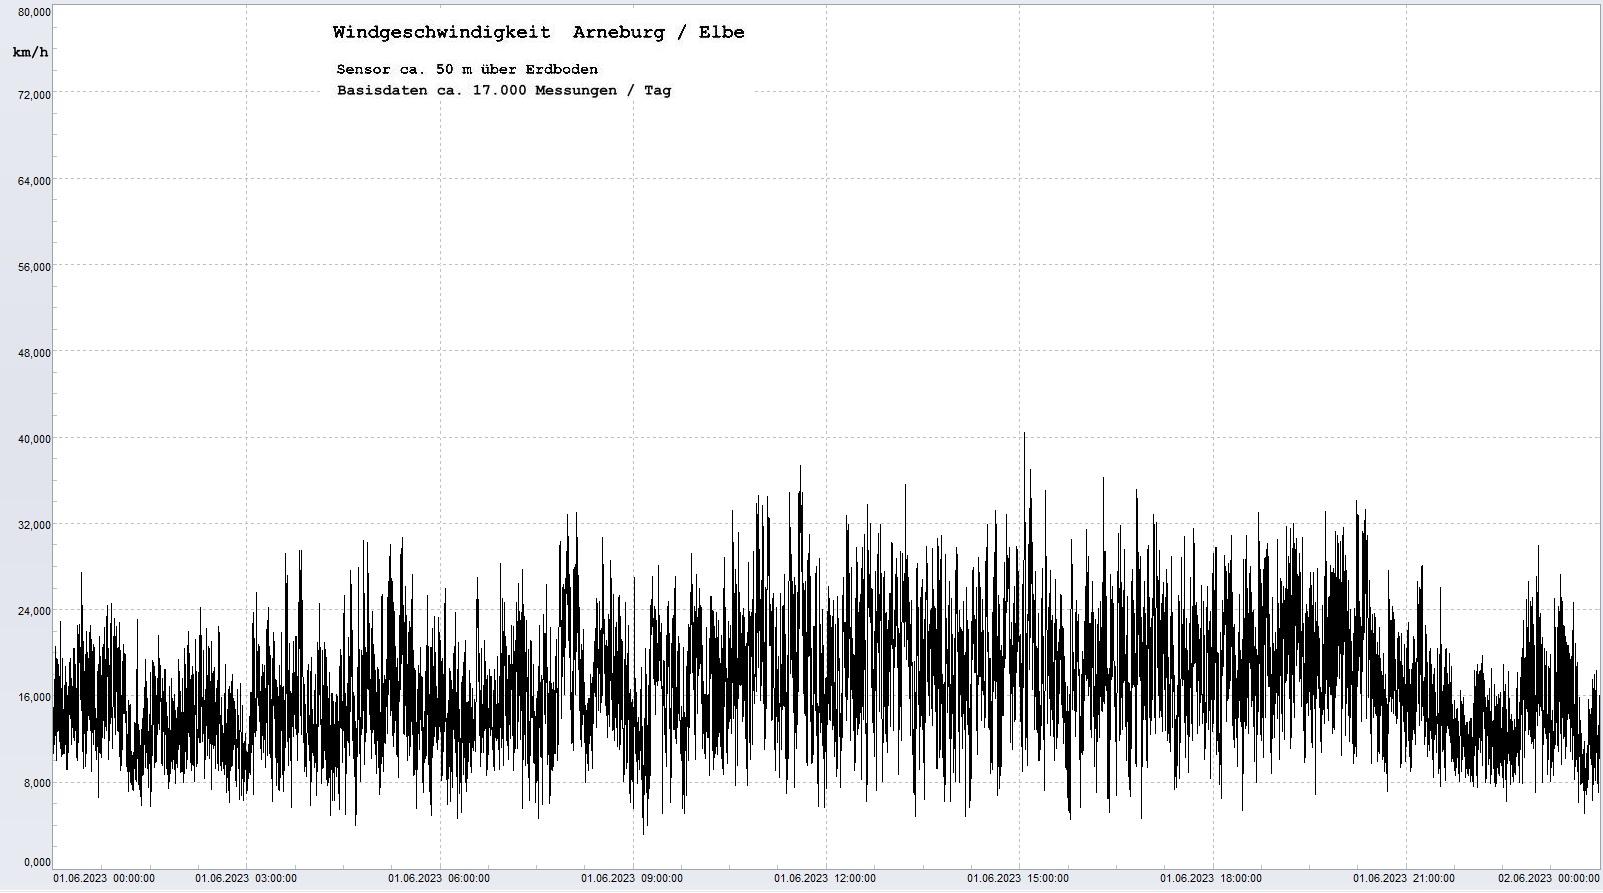 Arneburg Tages-Diagramm Winddaten, 01.06.2023
  Diagramm, Sensor auf Gebäude, ca. 50 m über Erdboden, Basis: 5s-Aufzeichnung